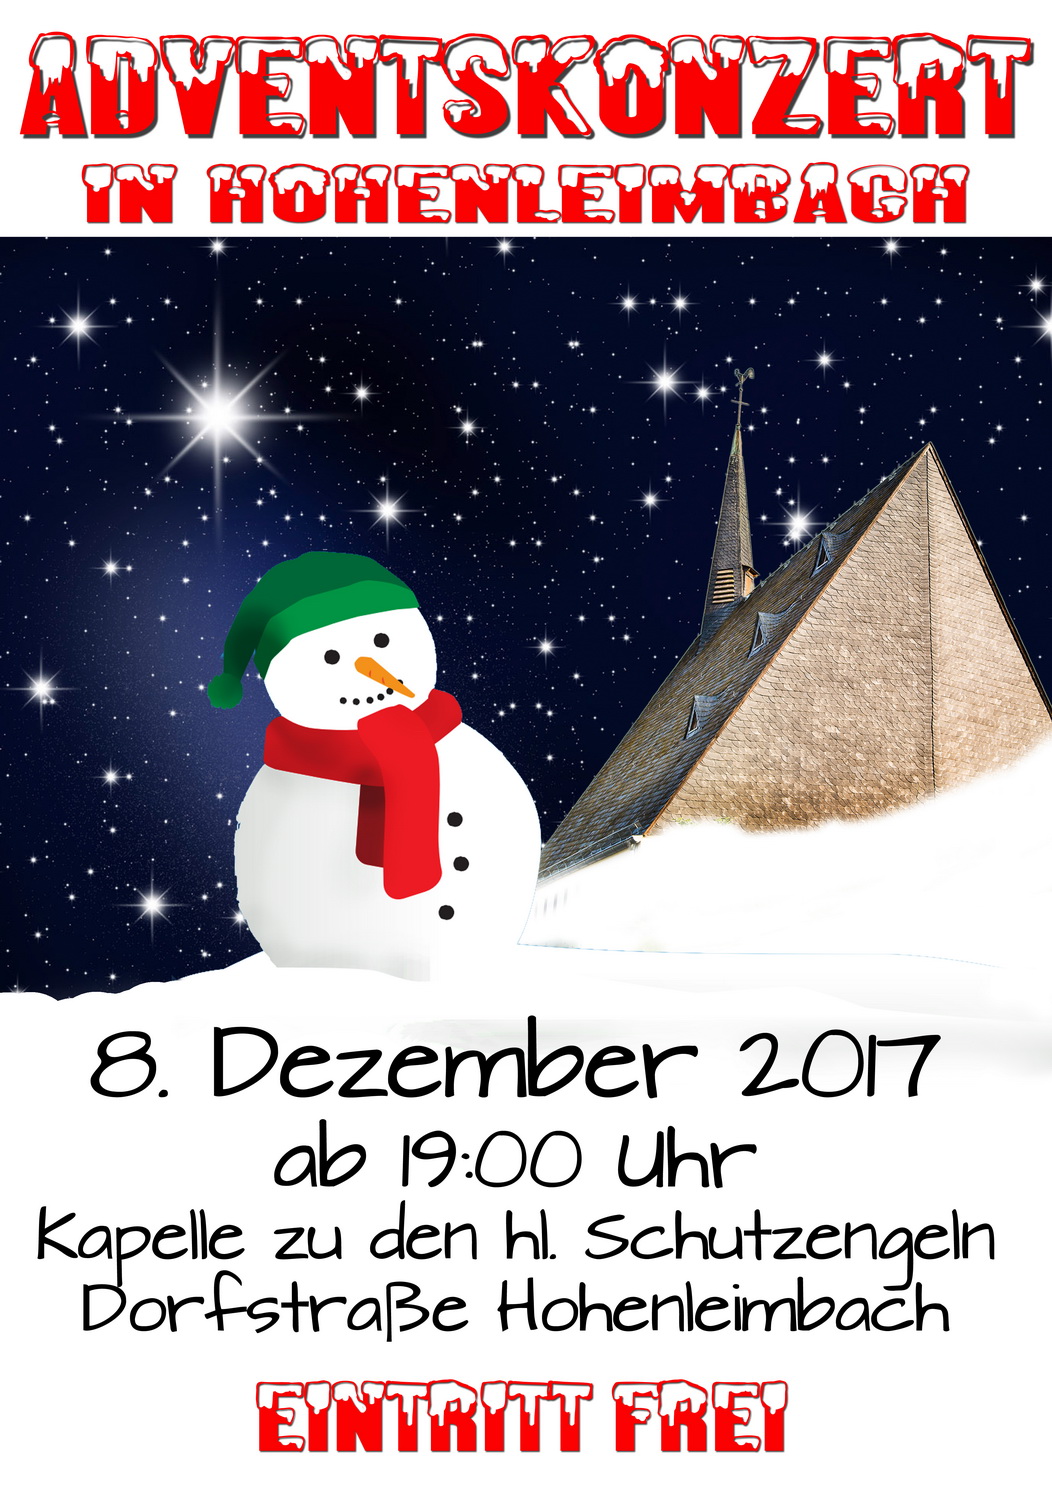 Adventskonzert in der Kapelle zu Hohenleimbach am 8. Dezember